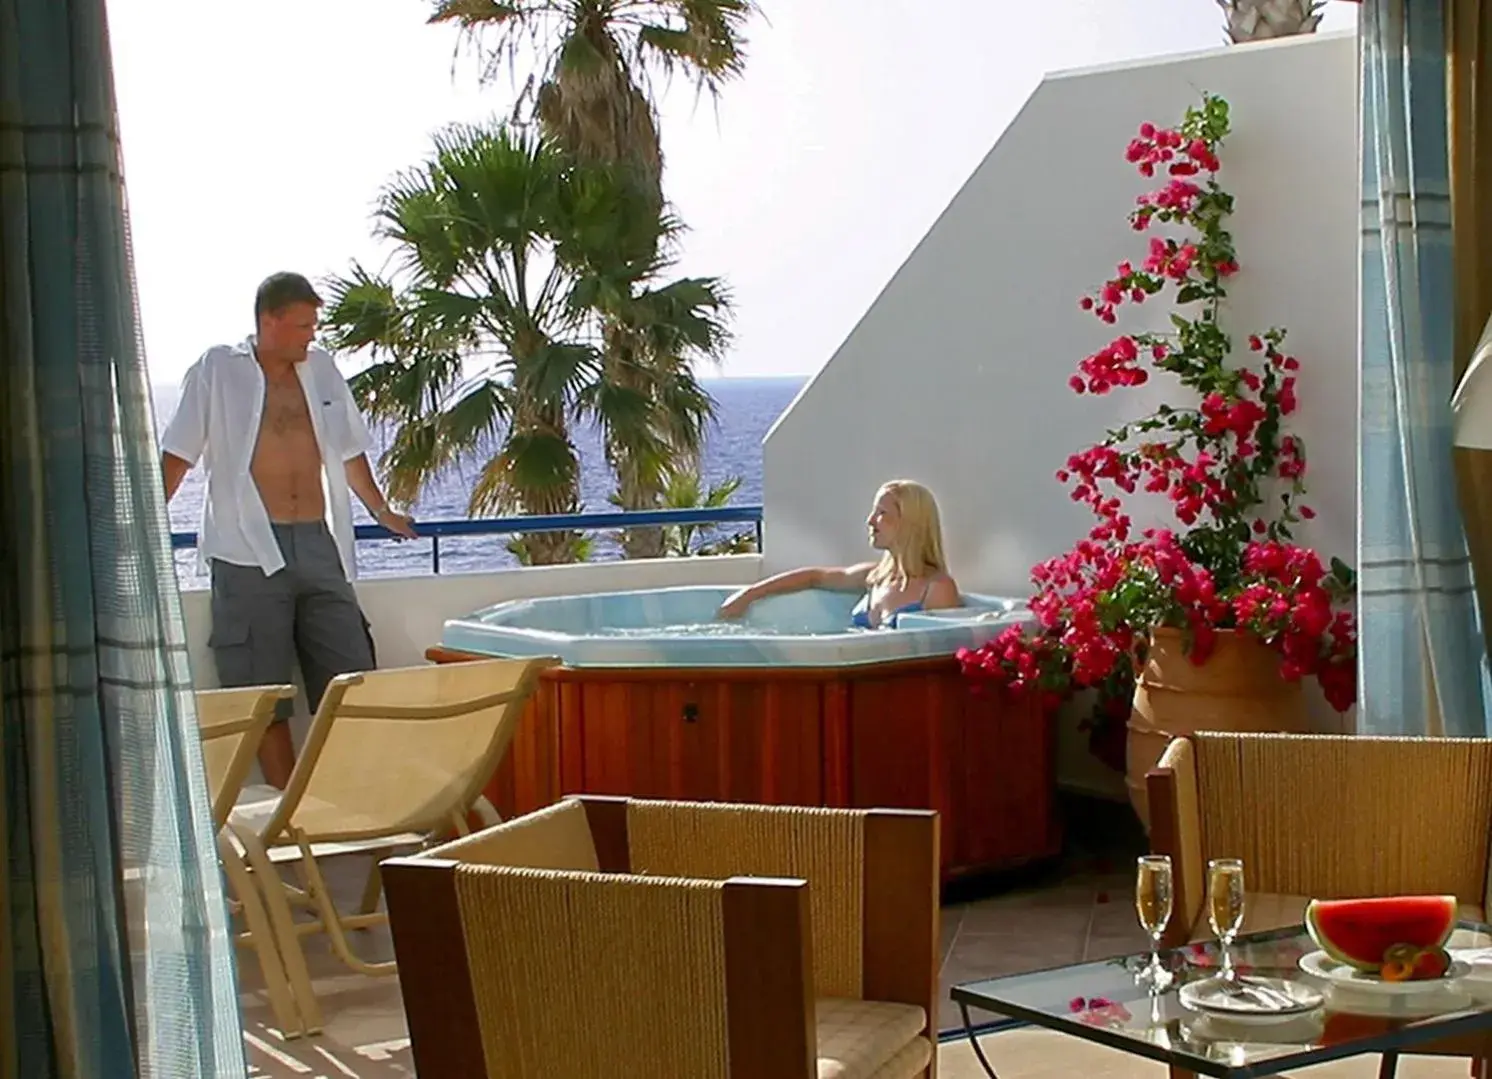 Premium Vip Junior Suite with outdoor Hot Tub in Azia Resort & Spa